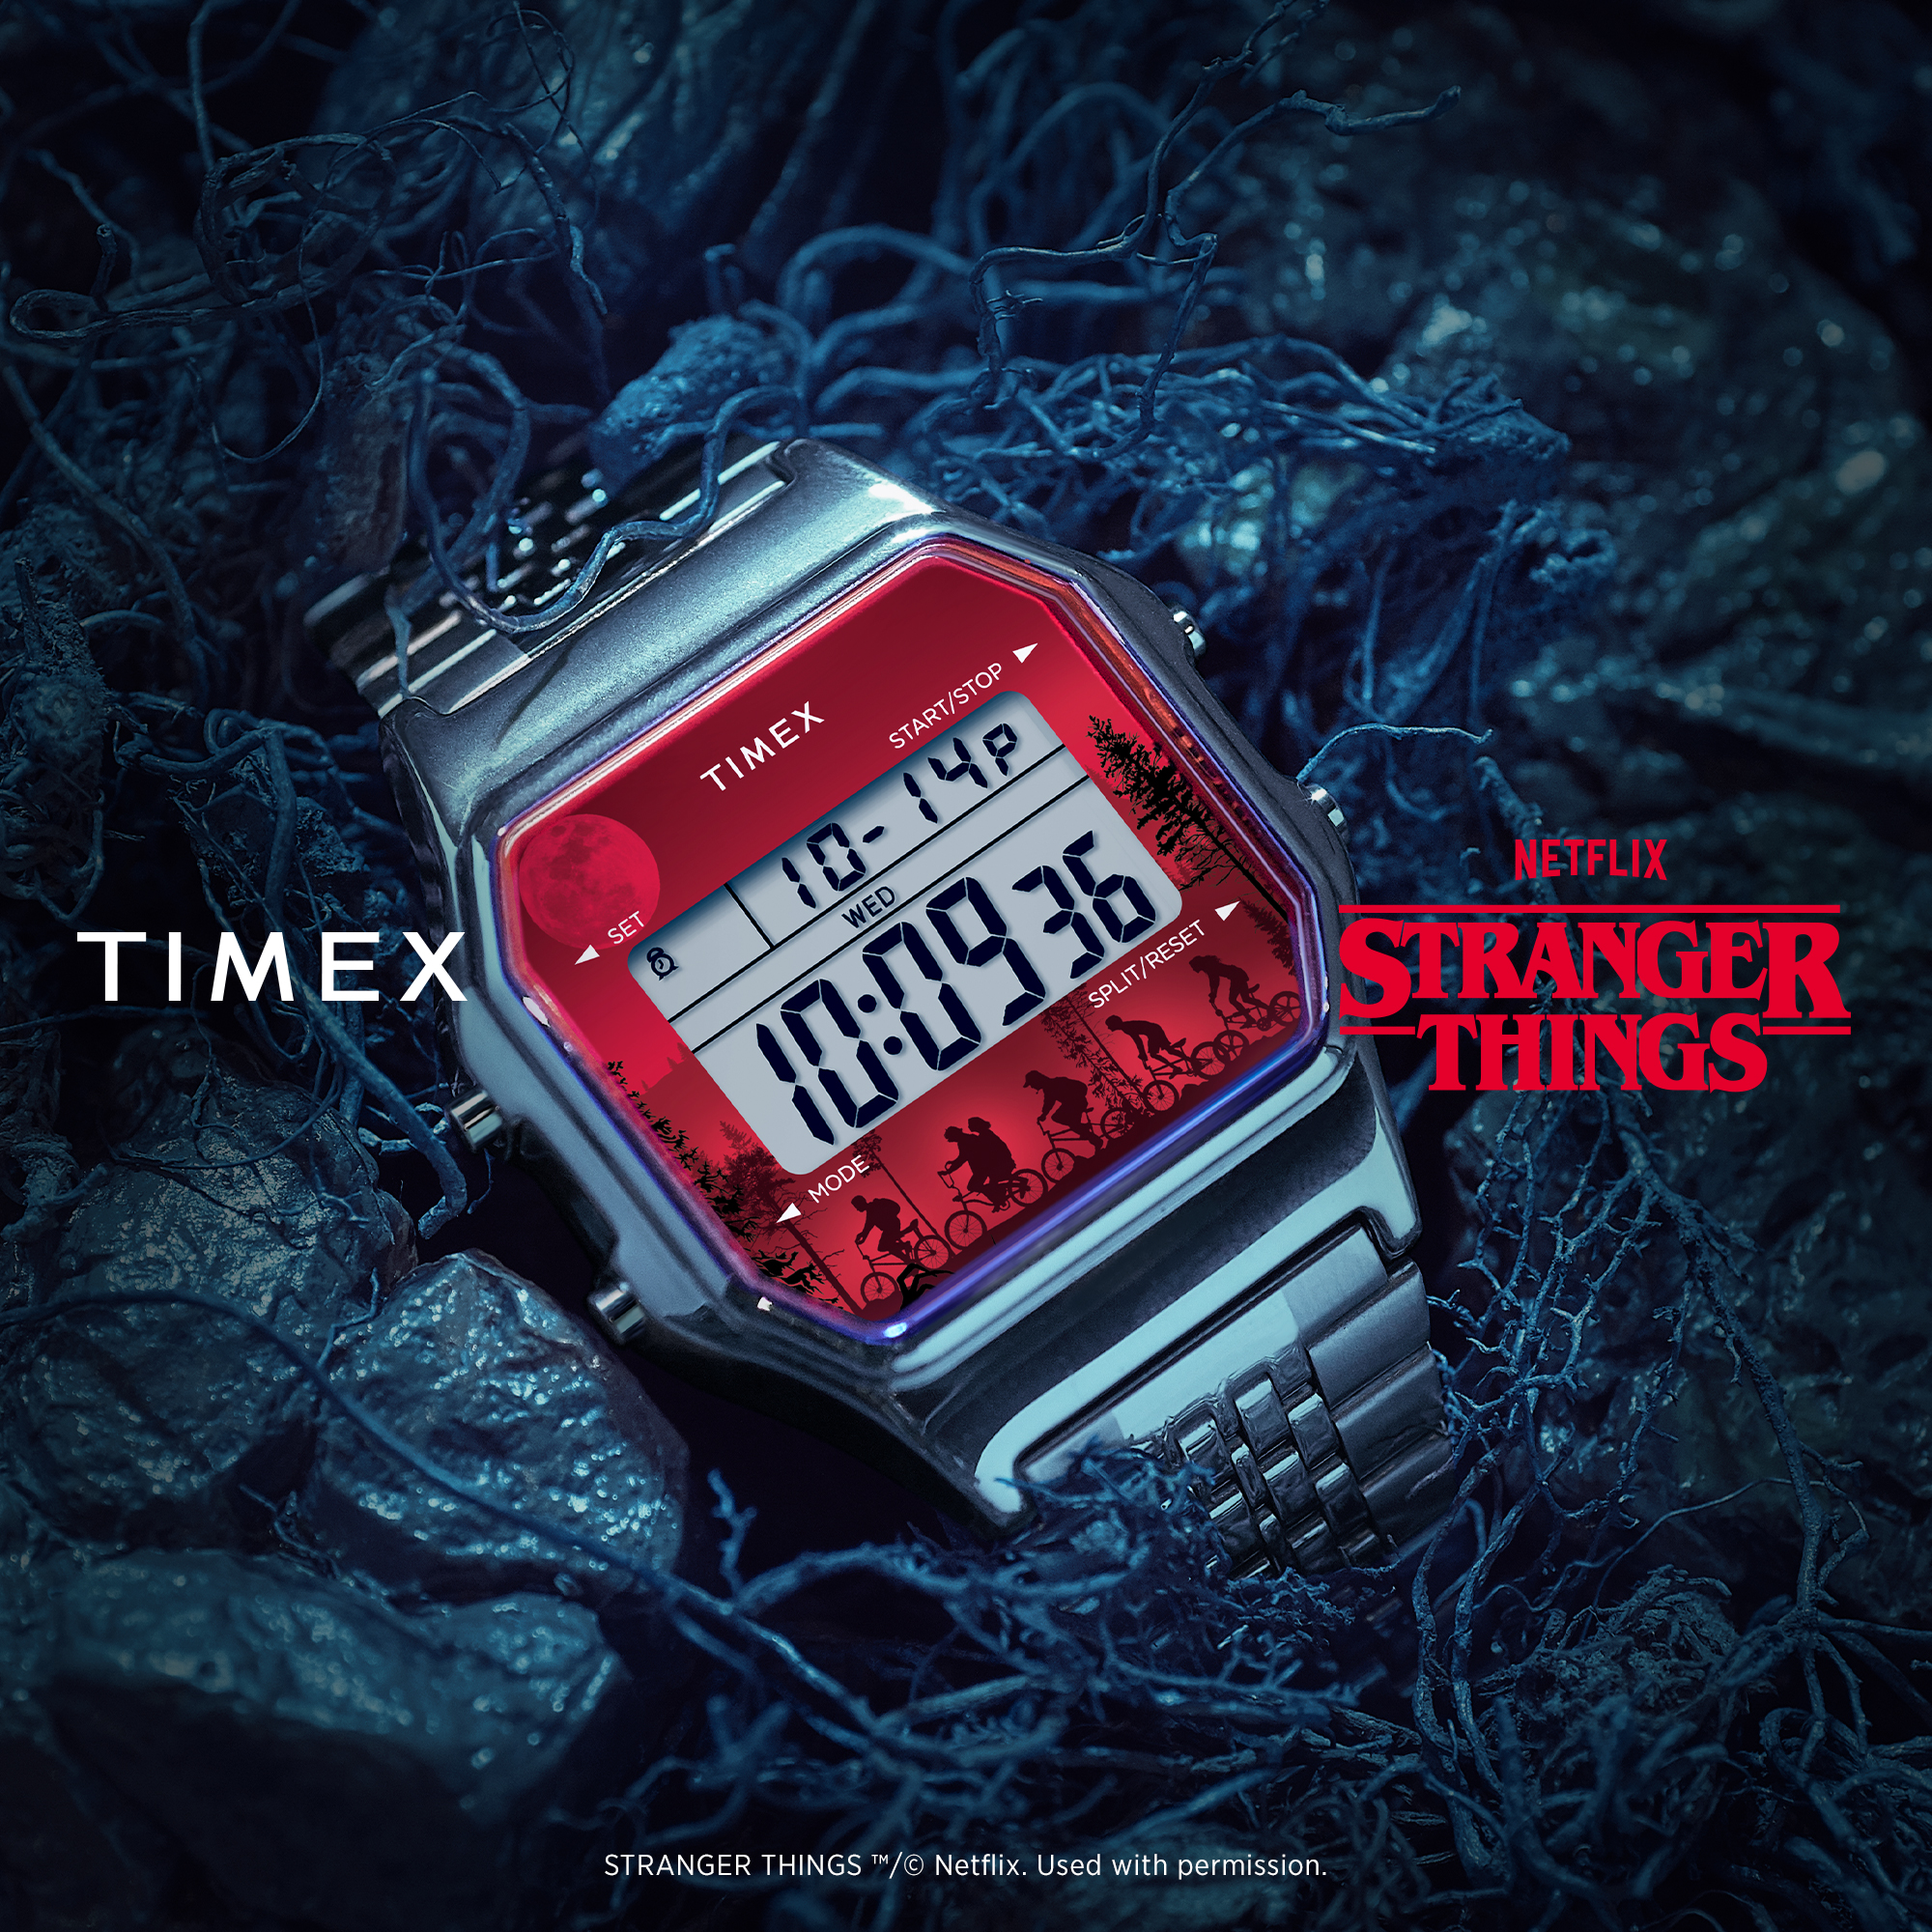 腕時計ブランド『TIMEX(タイメックス)』は、Netflixの人気ドラマ 